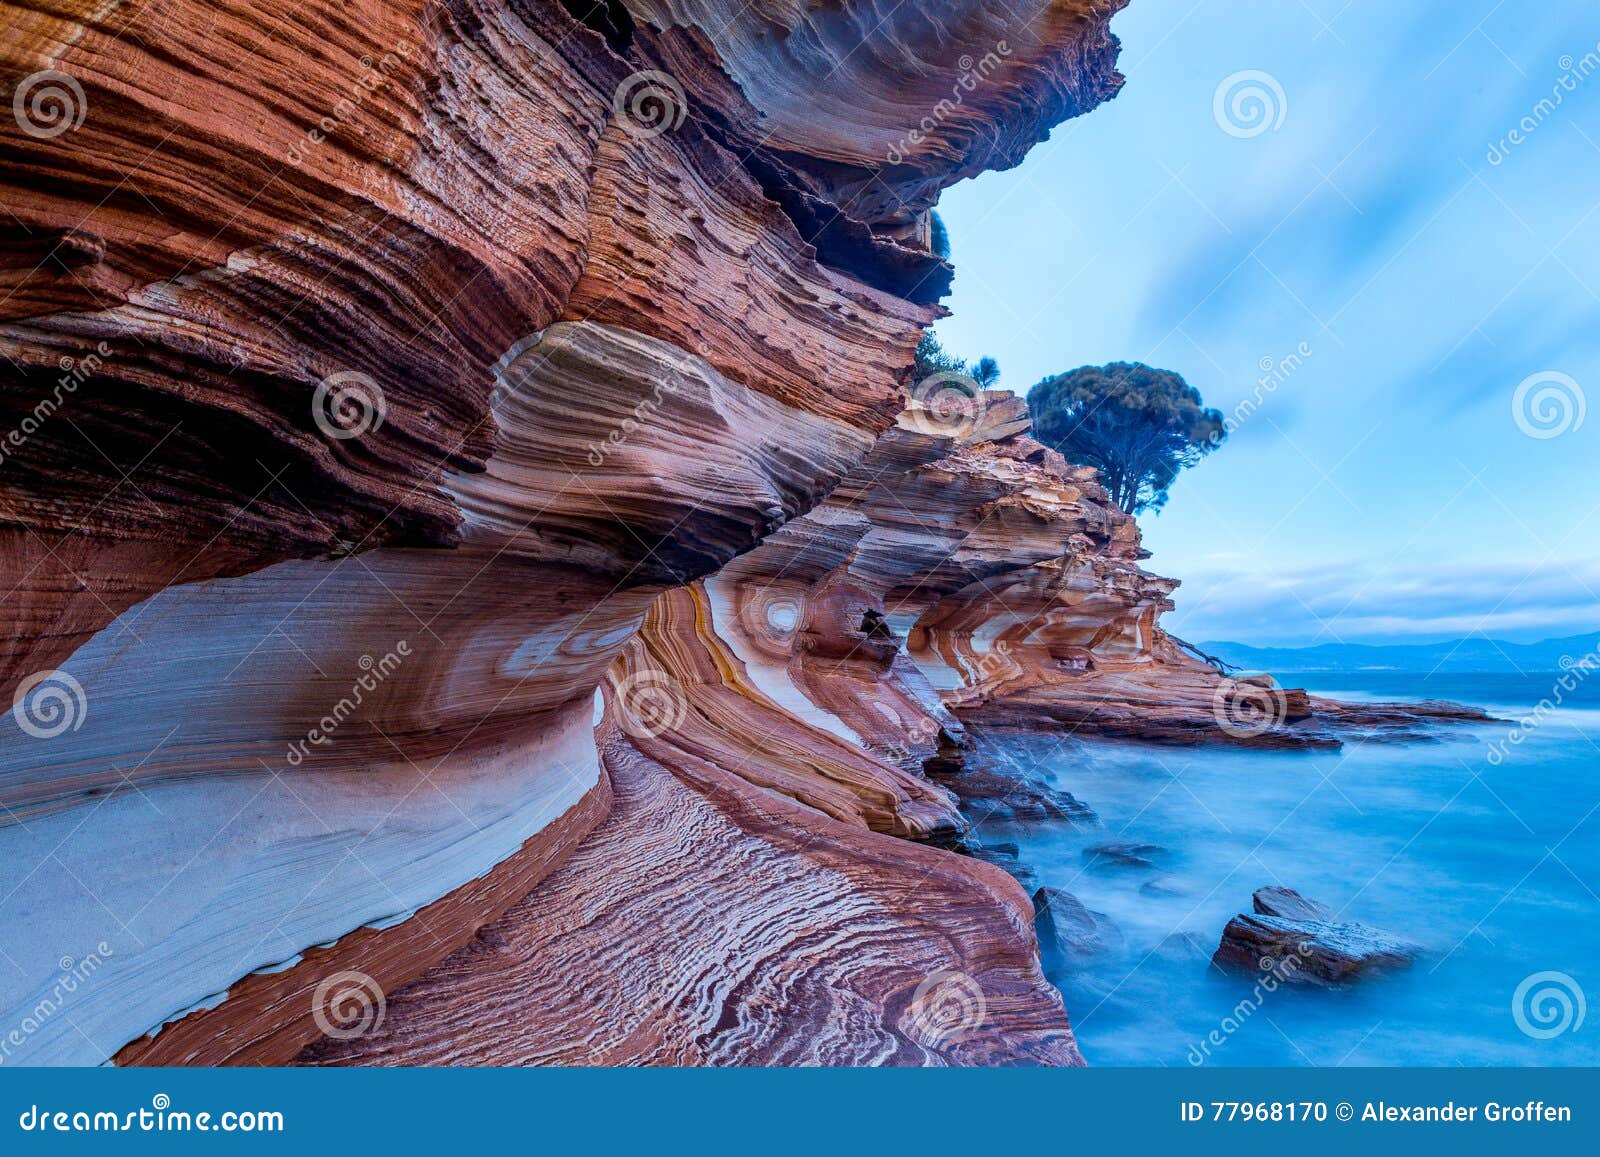 painted cliffs on maria island, tasmania